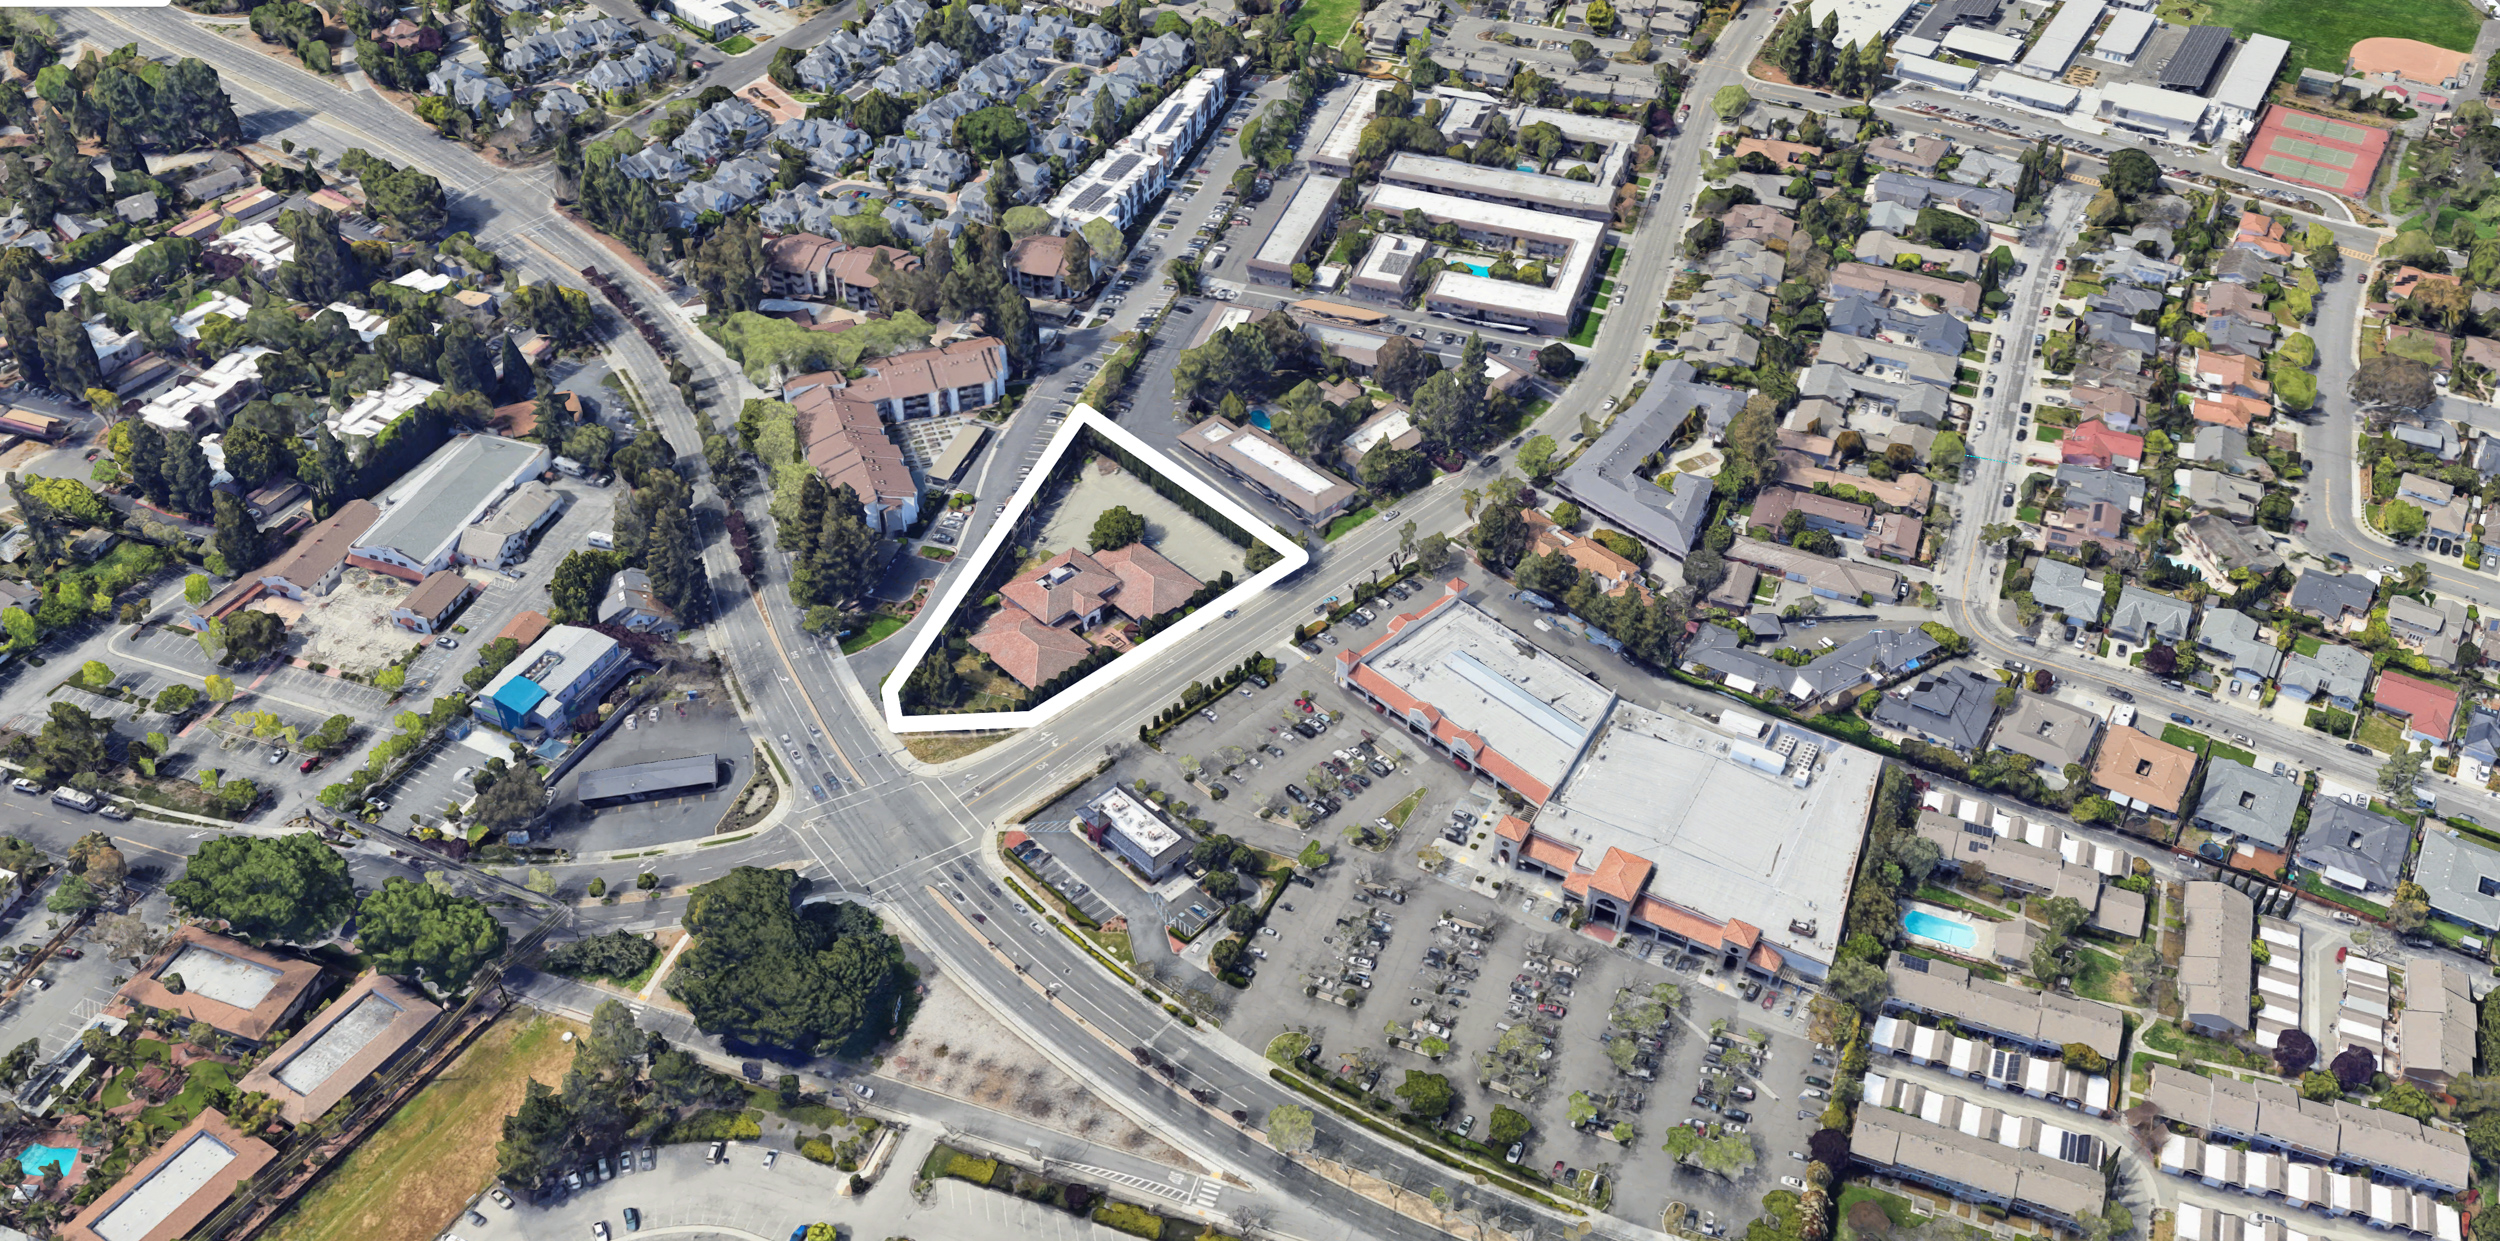 1265 Montecito Avenue, image via Google Satellite